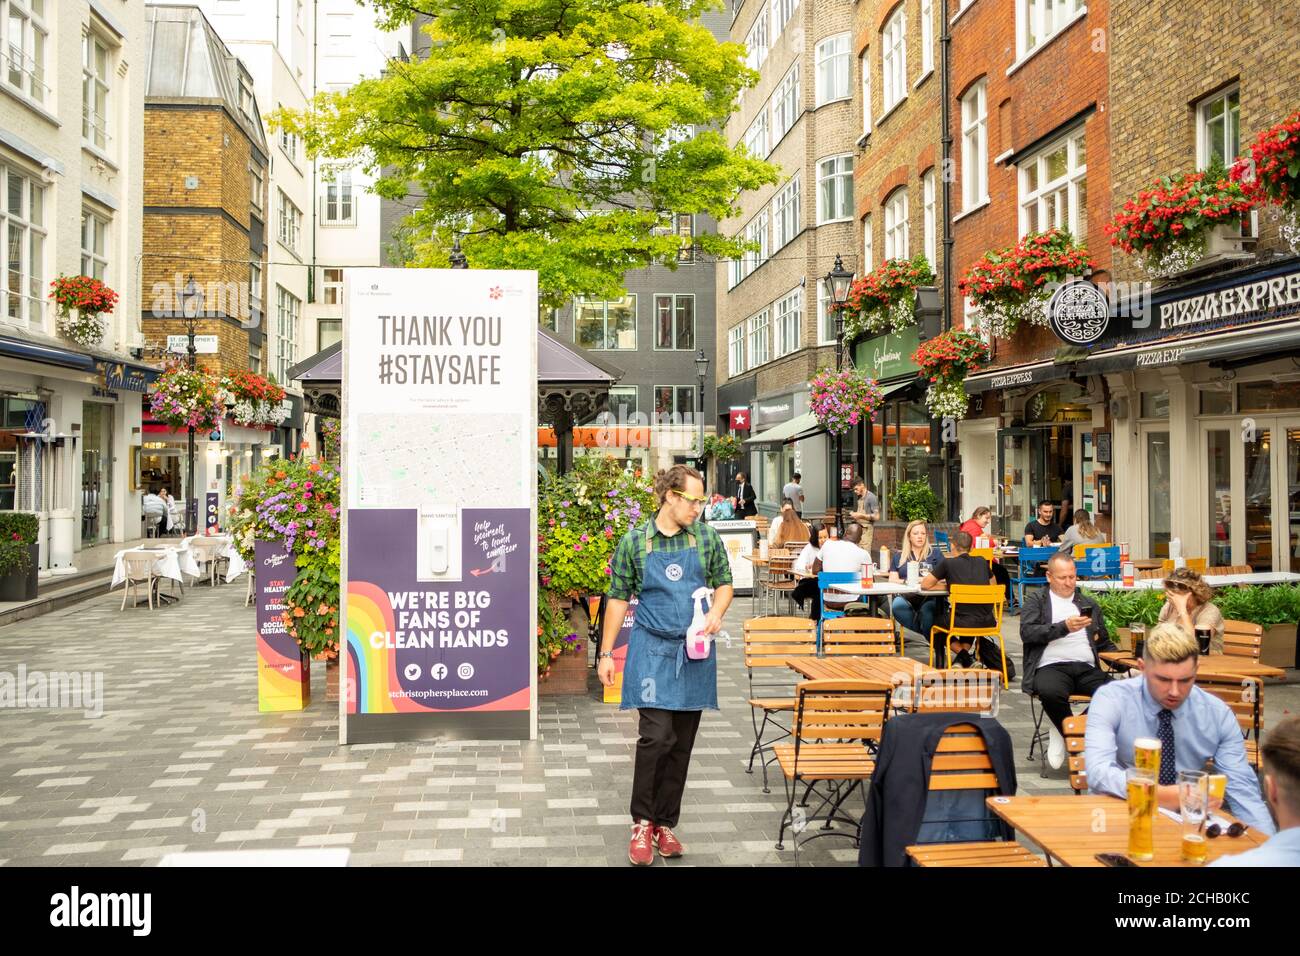 Londres- septembre 2020: Scène de rue du quartier ouest de Londres avec des panneaux rappelant aux gens de rester en sécurité pendant la pandémie Covid 19 Banque D'Images